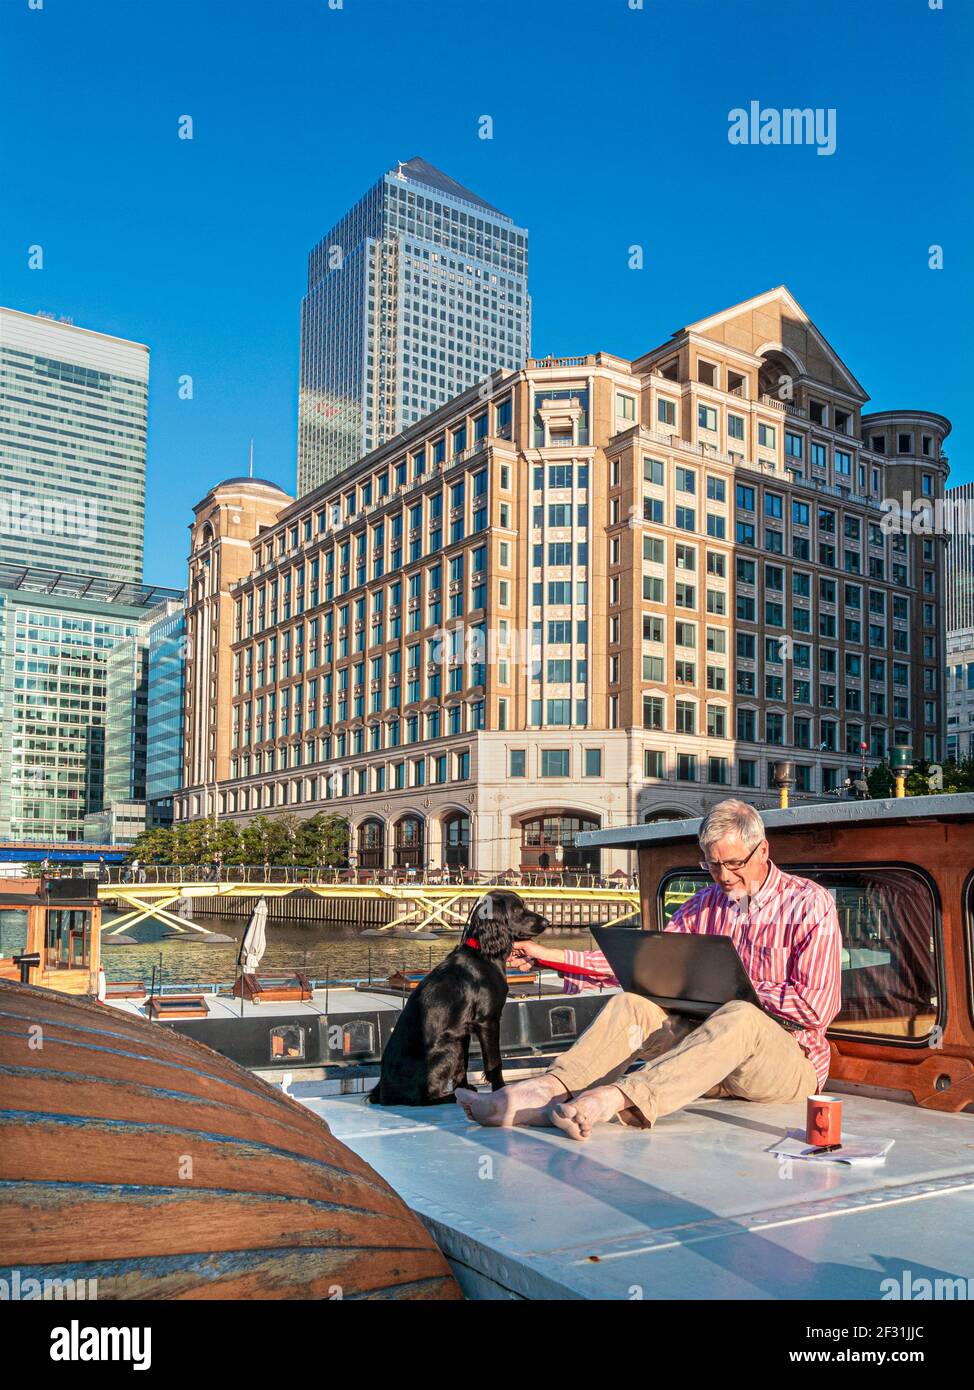 Homme mature 50-55 ans travaillant sur ordinateur portable avec son chien de spaniel dehors sur son barge de bureau, bureaux derrière Canary Wharf Londres E14 Royaume-Uni Banque D'Images